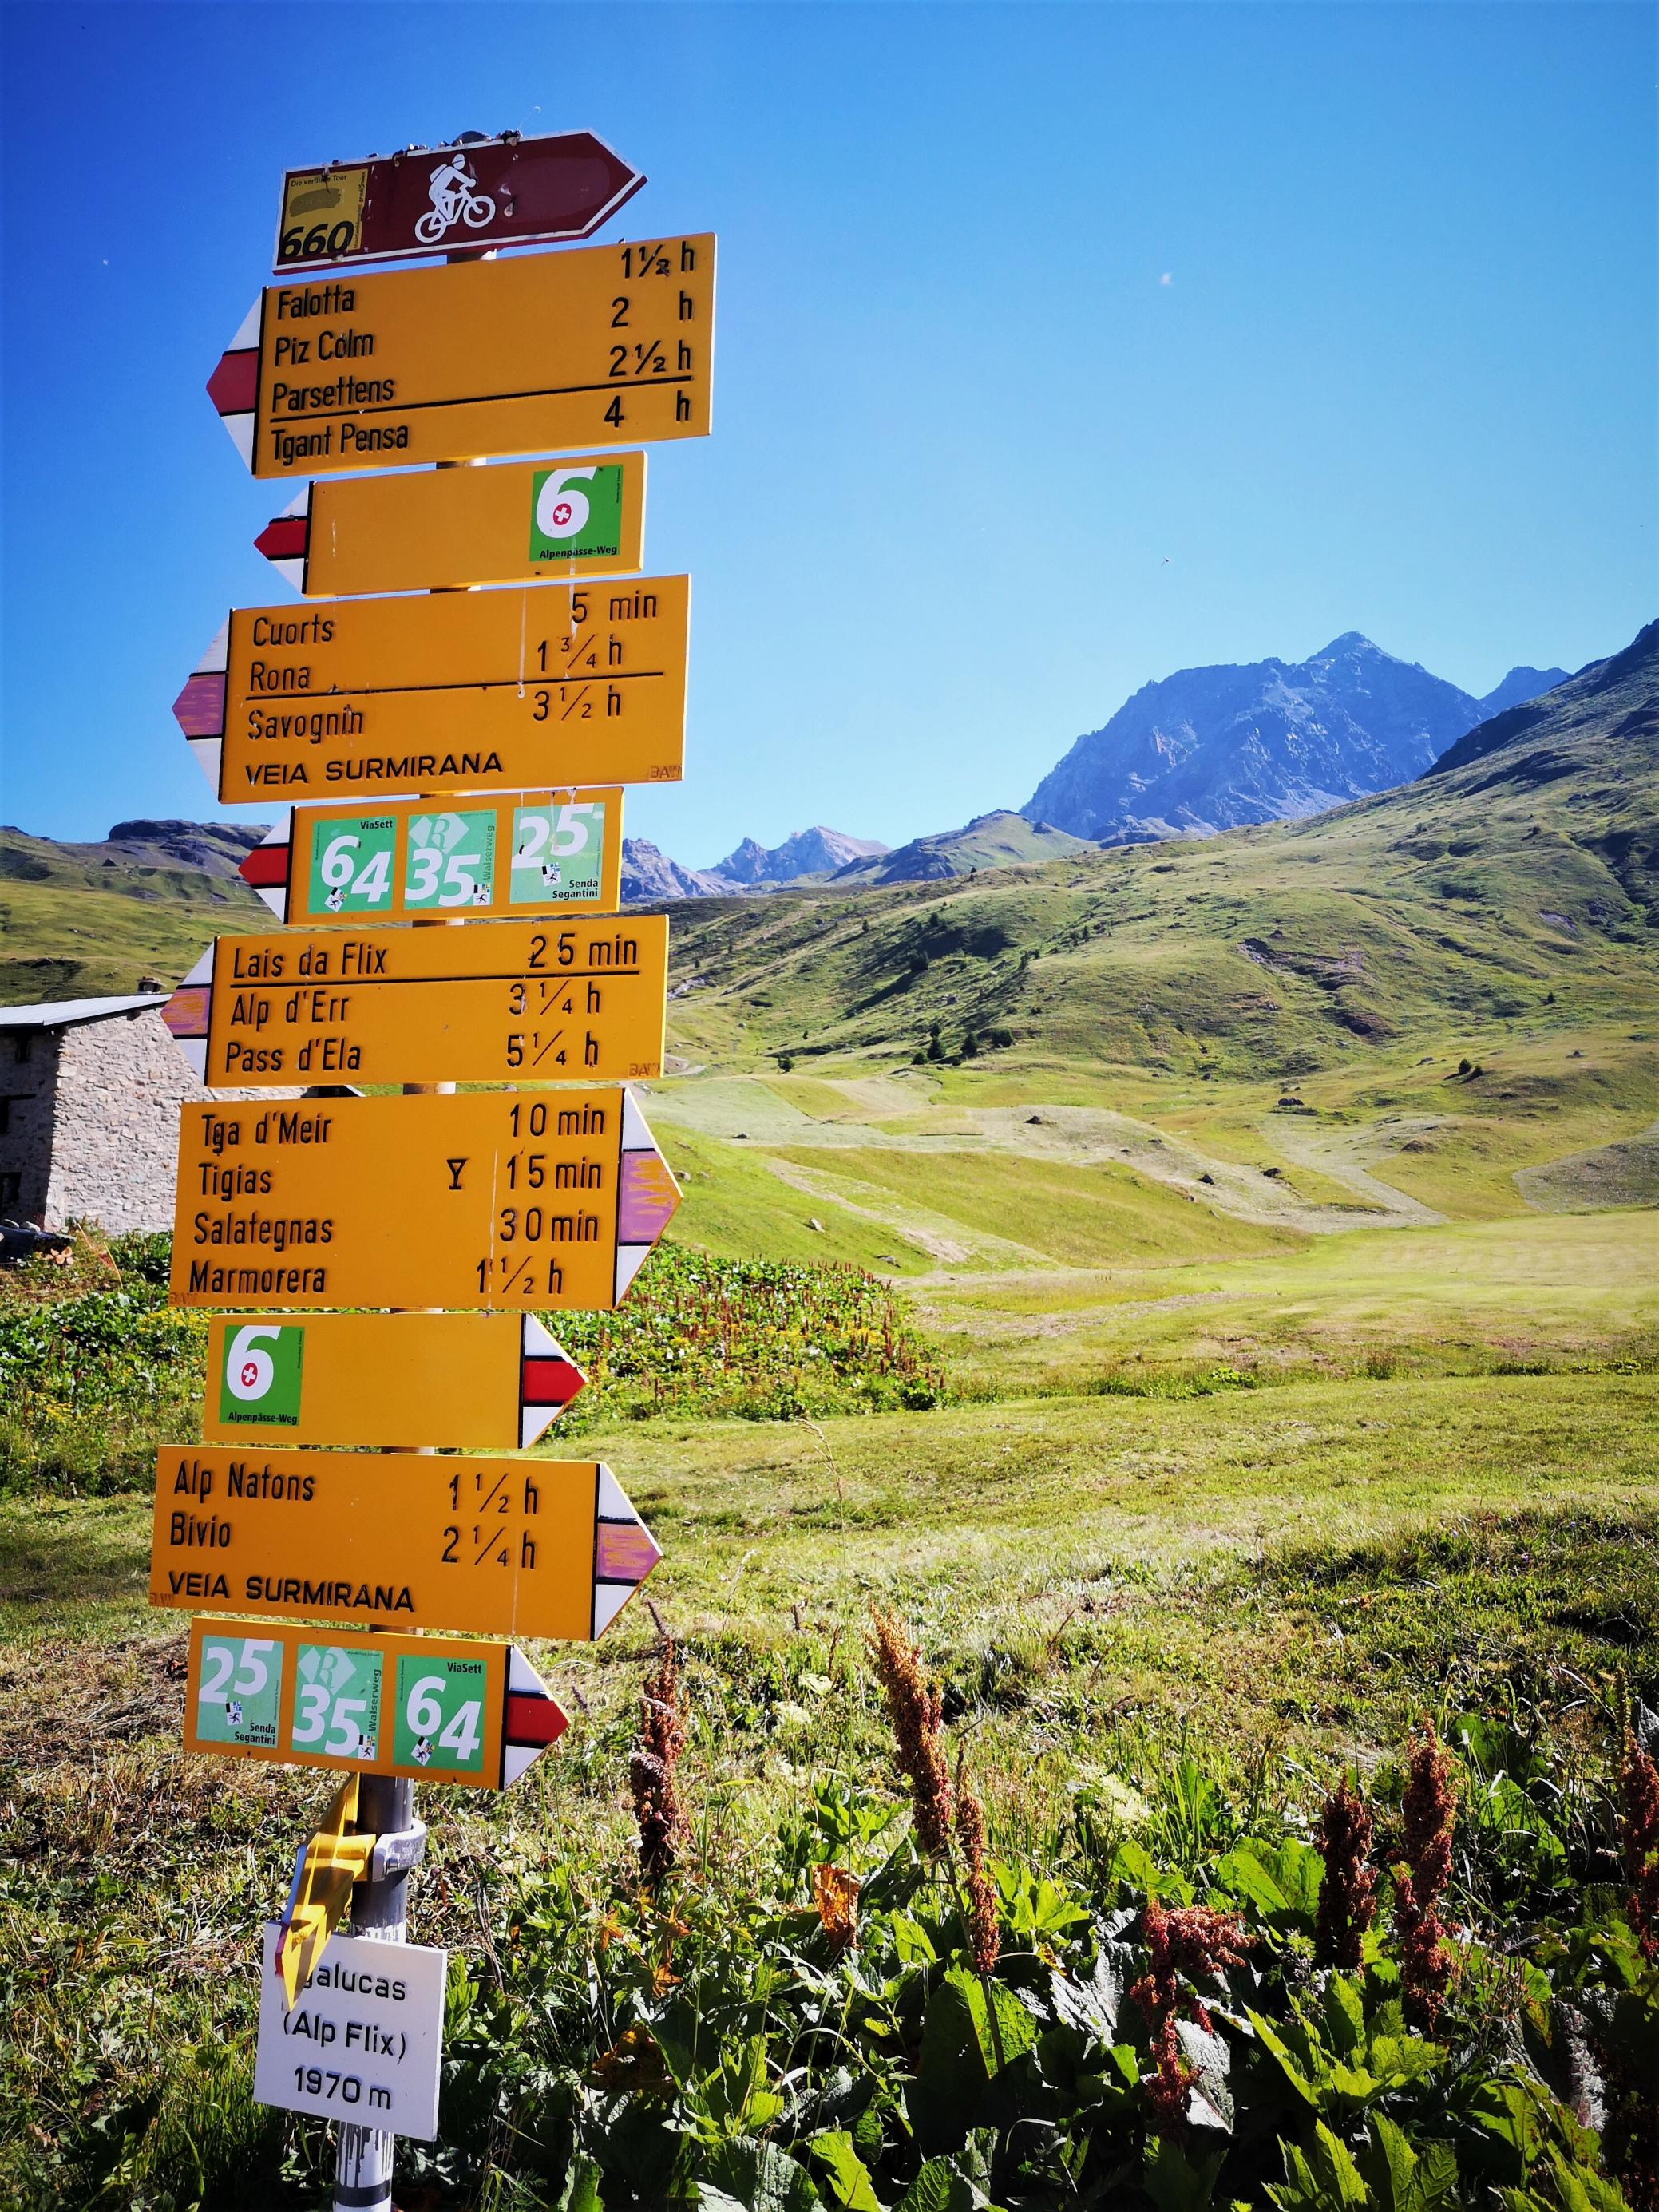 Knallgelber Schilderwald mit Hinweisen für Radfahrer und Wanderer auf der Alp Flix, hinter der ein spitzes, hohes Bergmassiv aufragt.